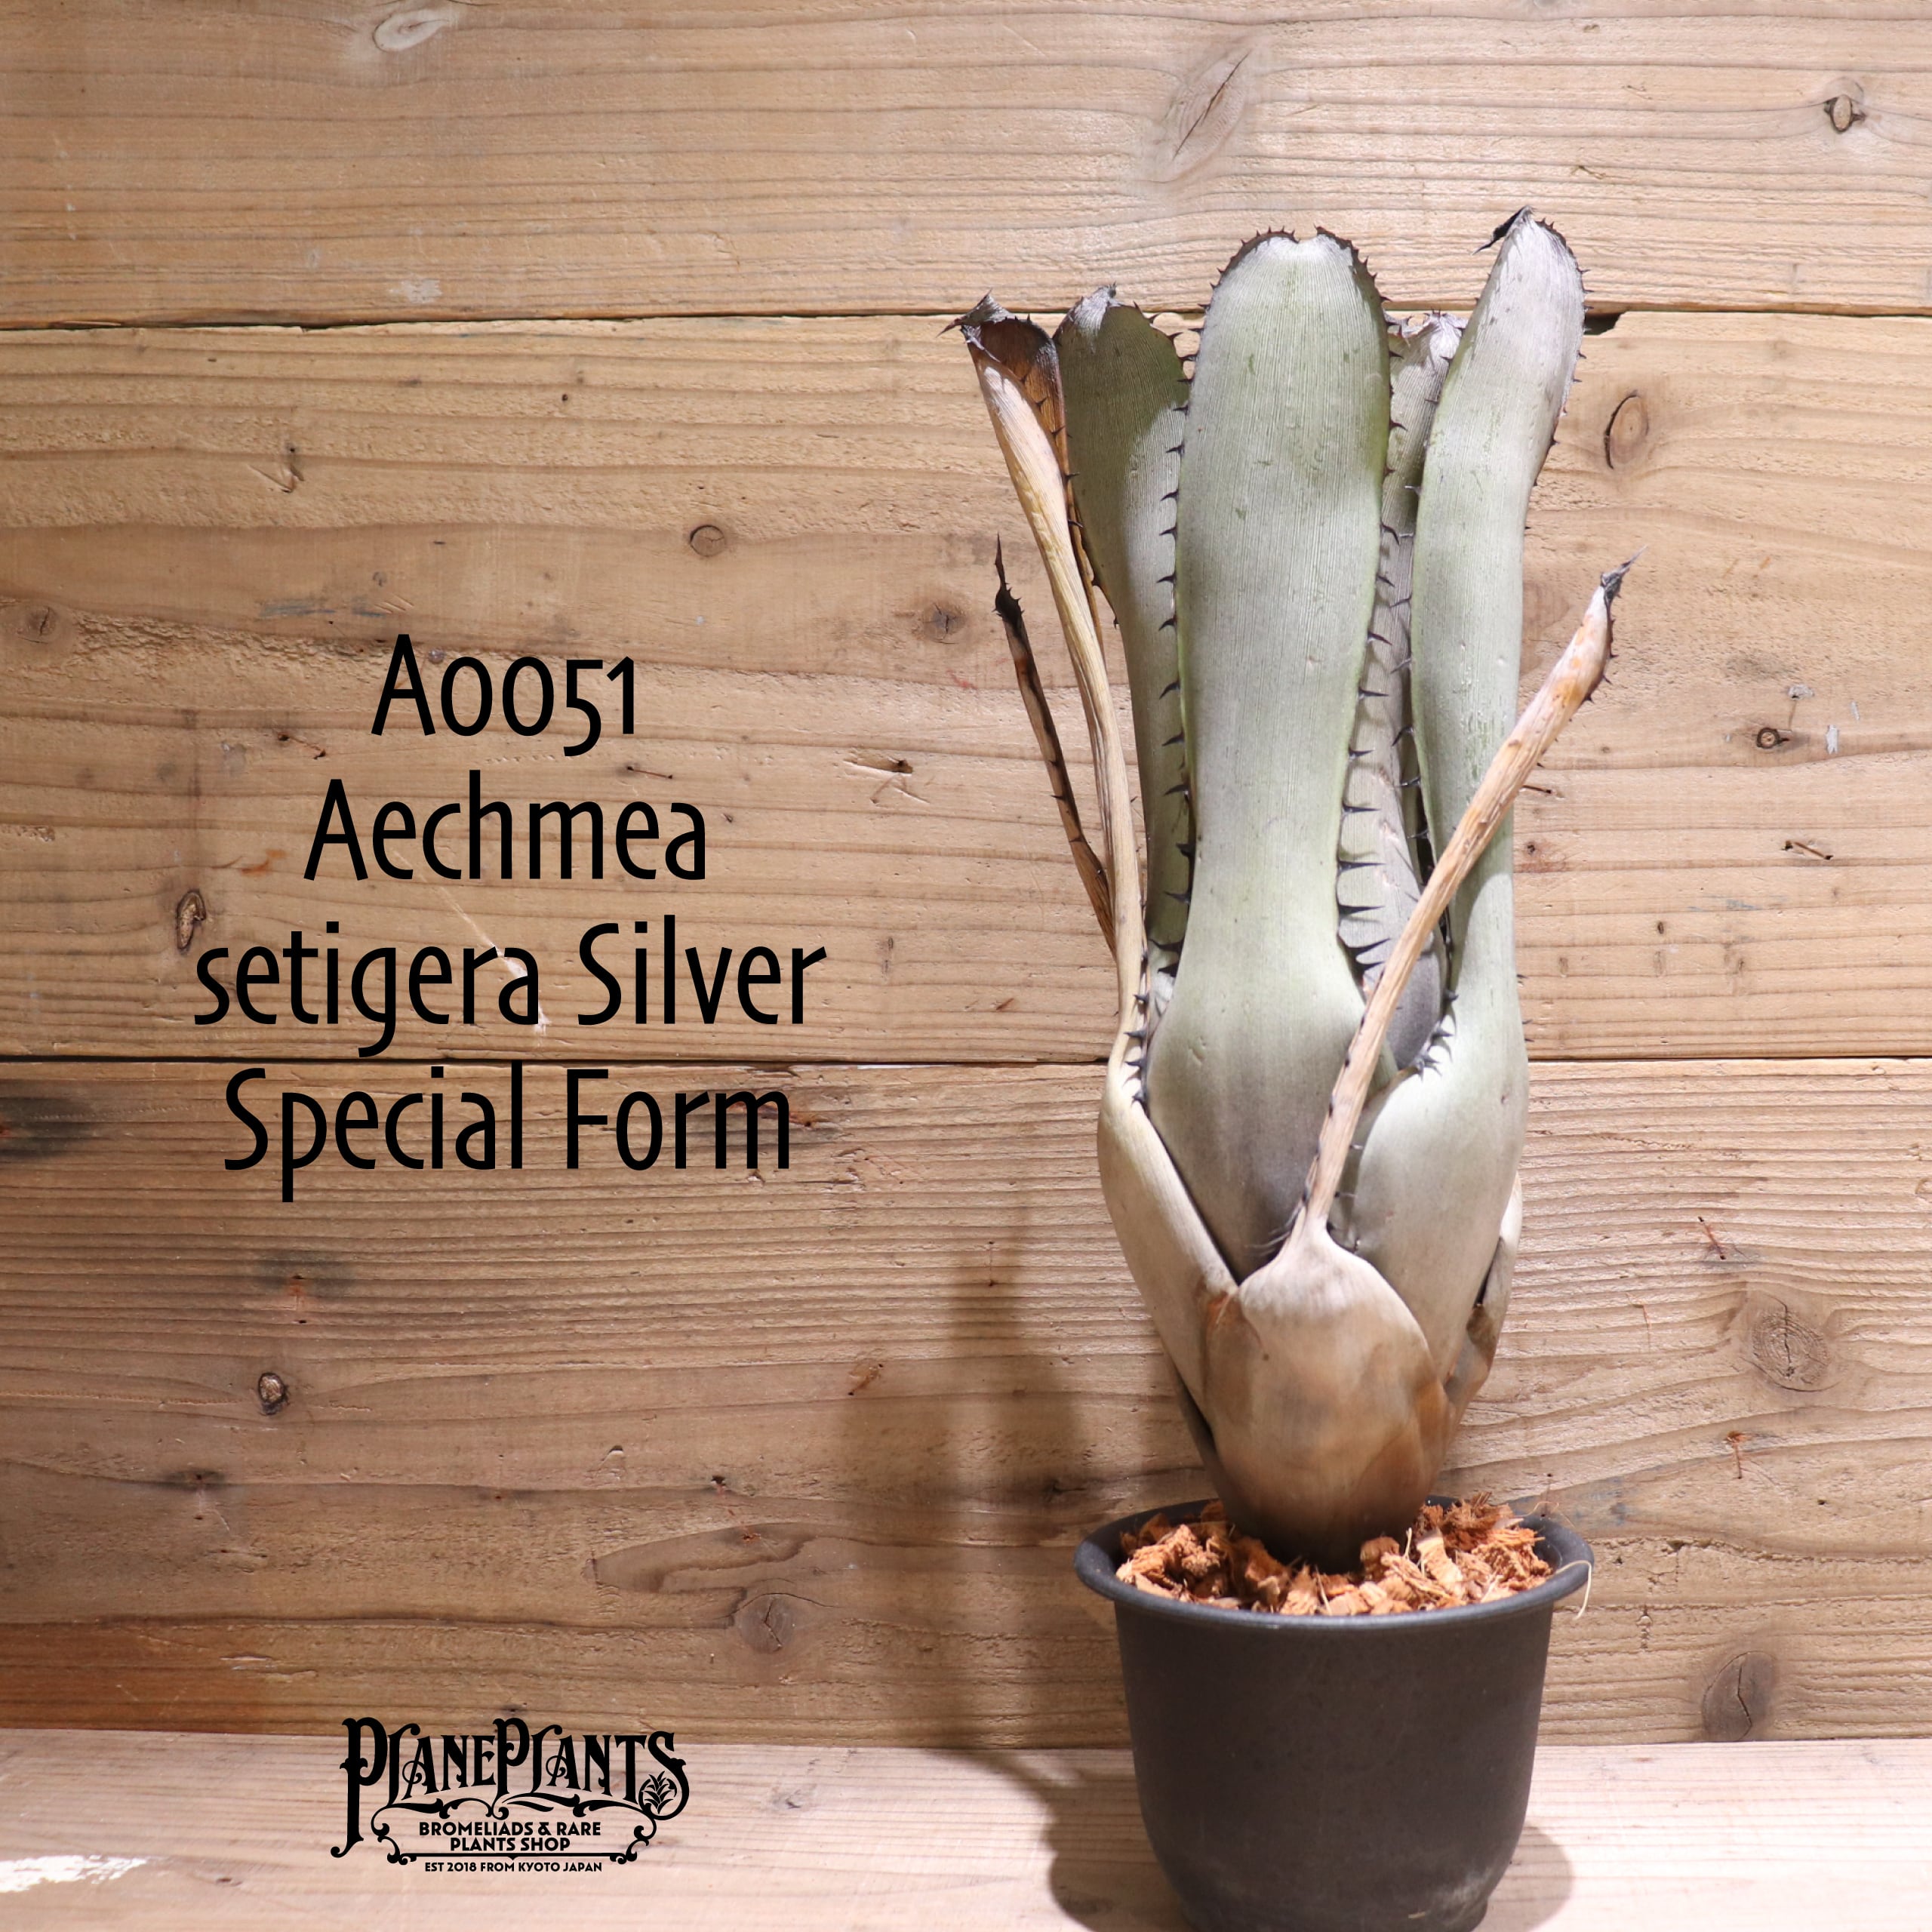 setigera Silver Special Form〔エクメア〕A0051